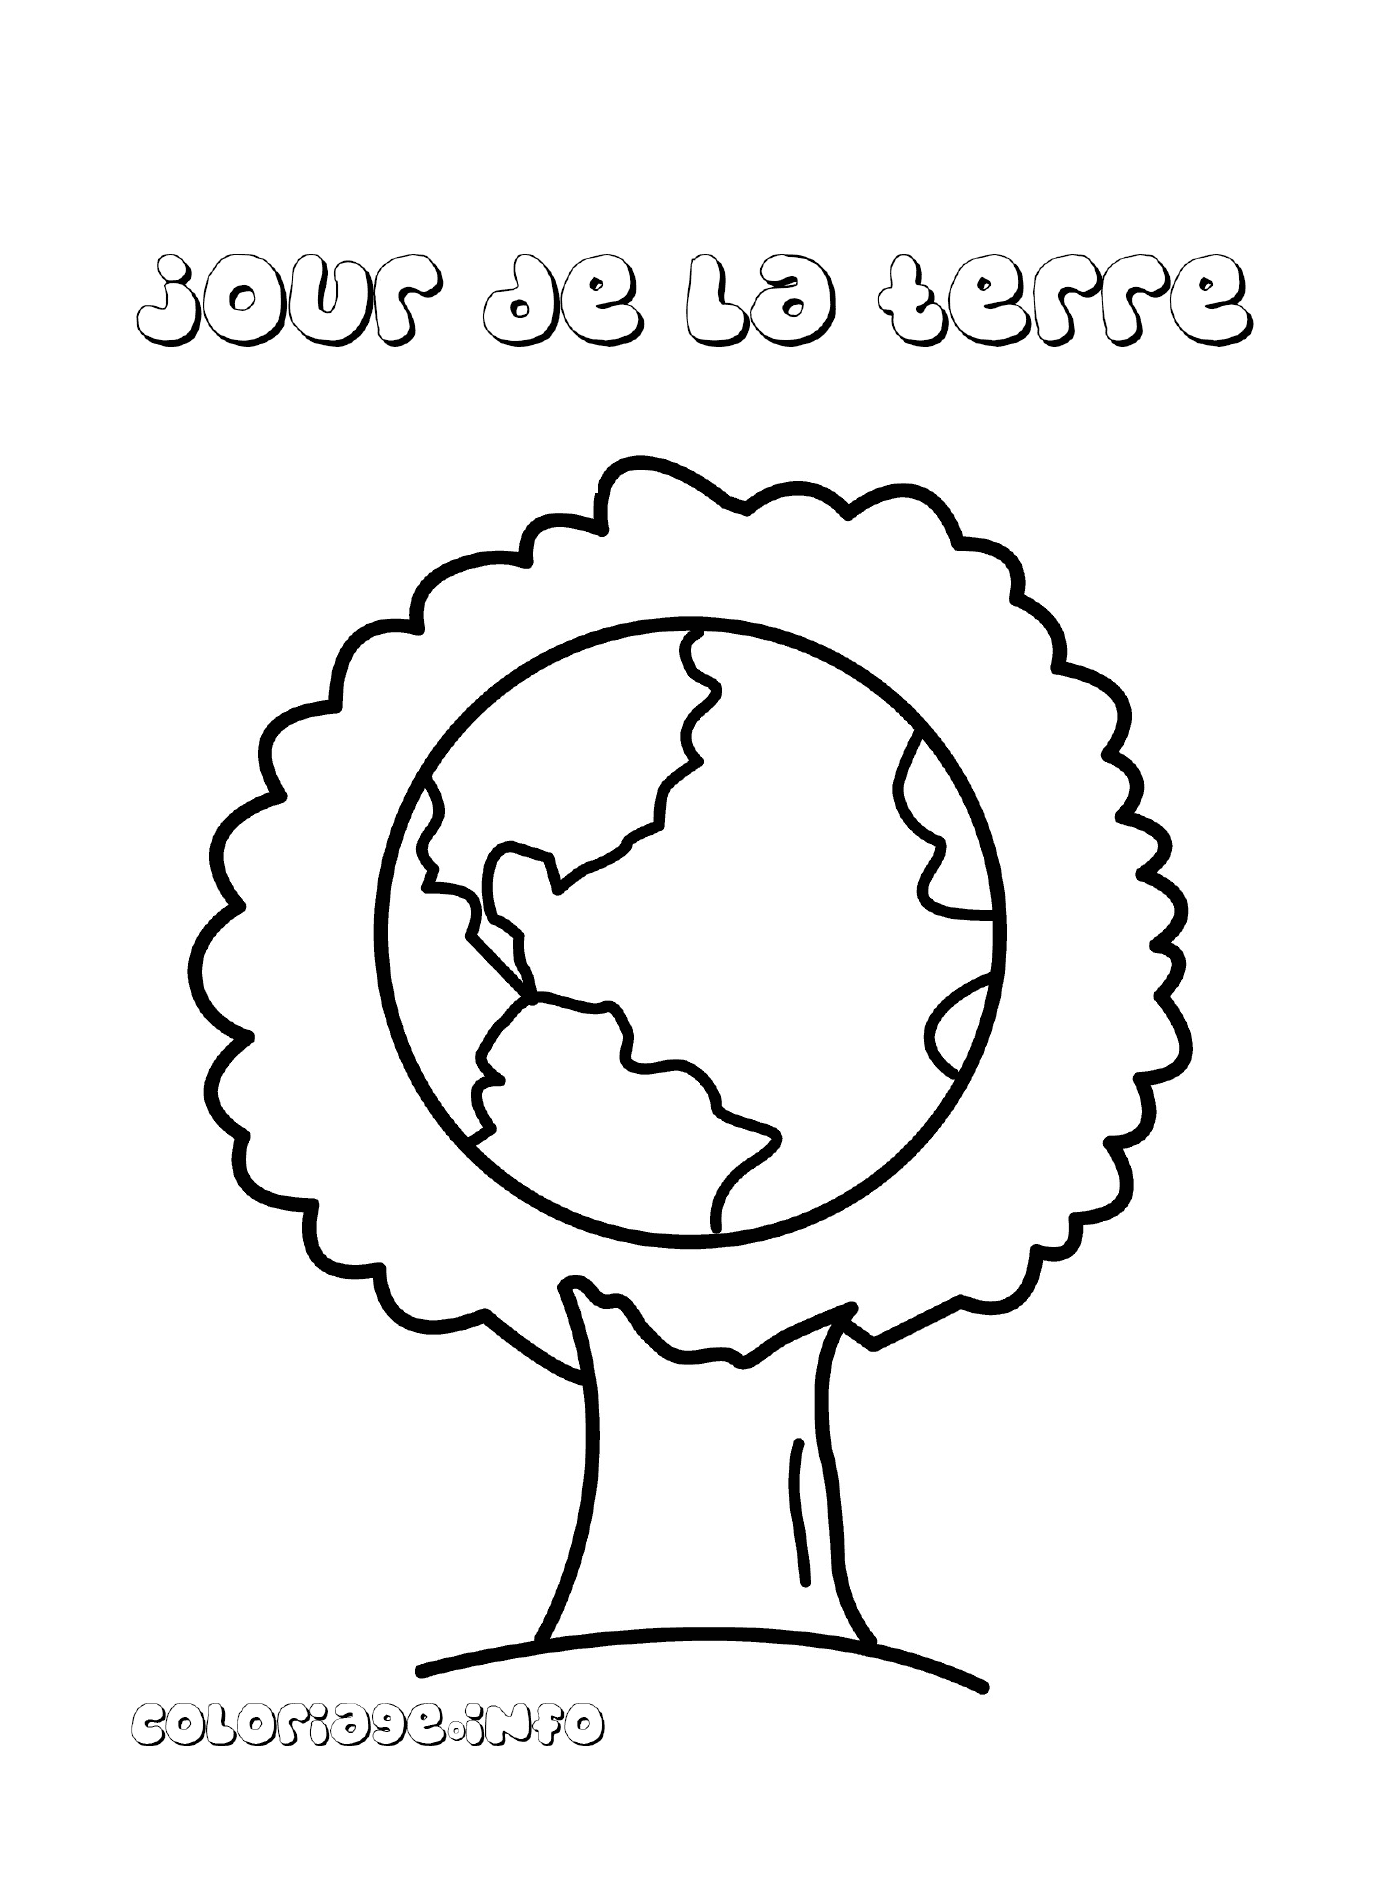   Arbre symbolique pour la Journée de la Terre 